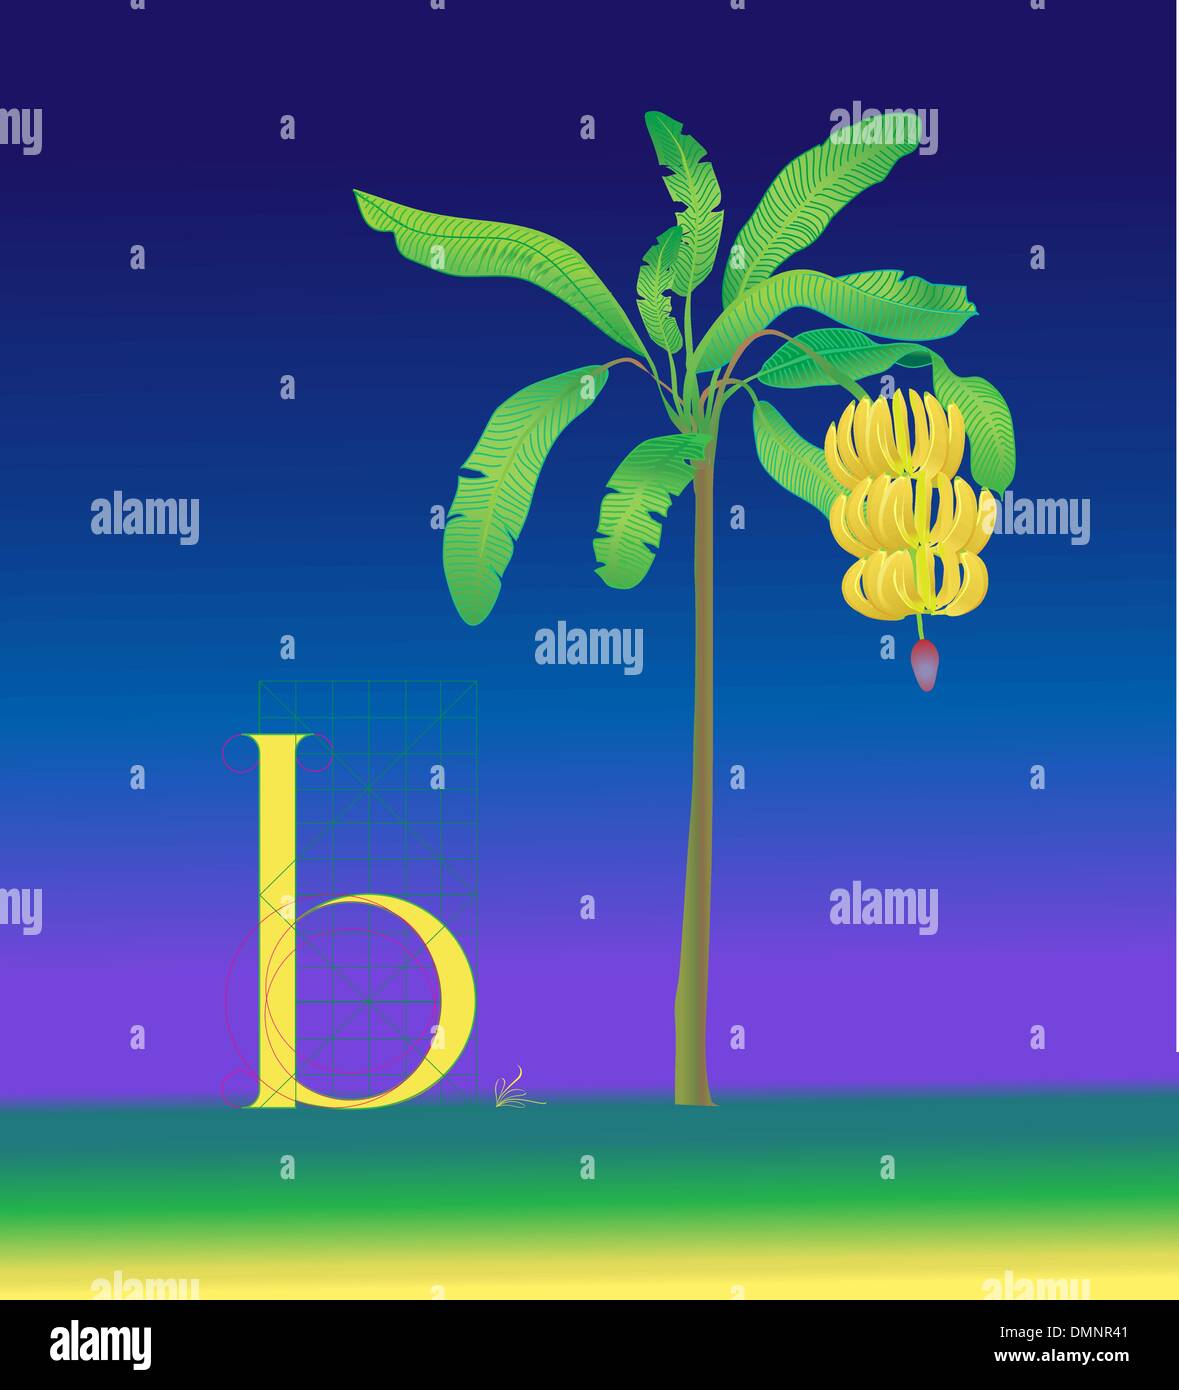 letter b like banana tree Stock Vector